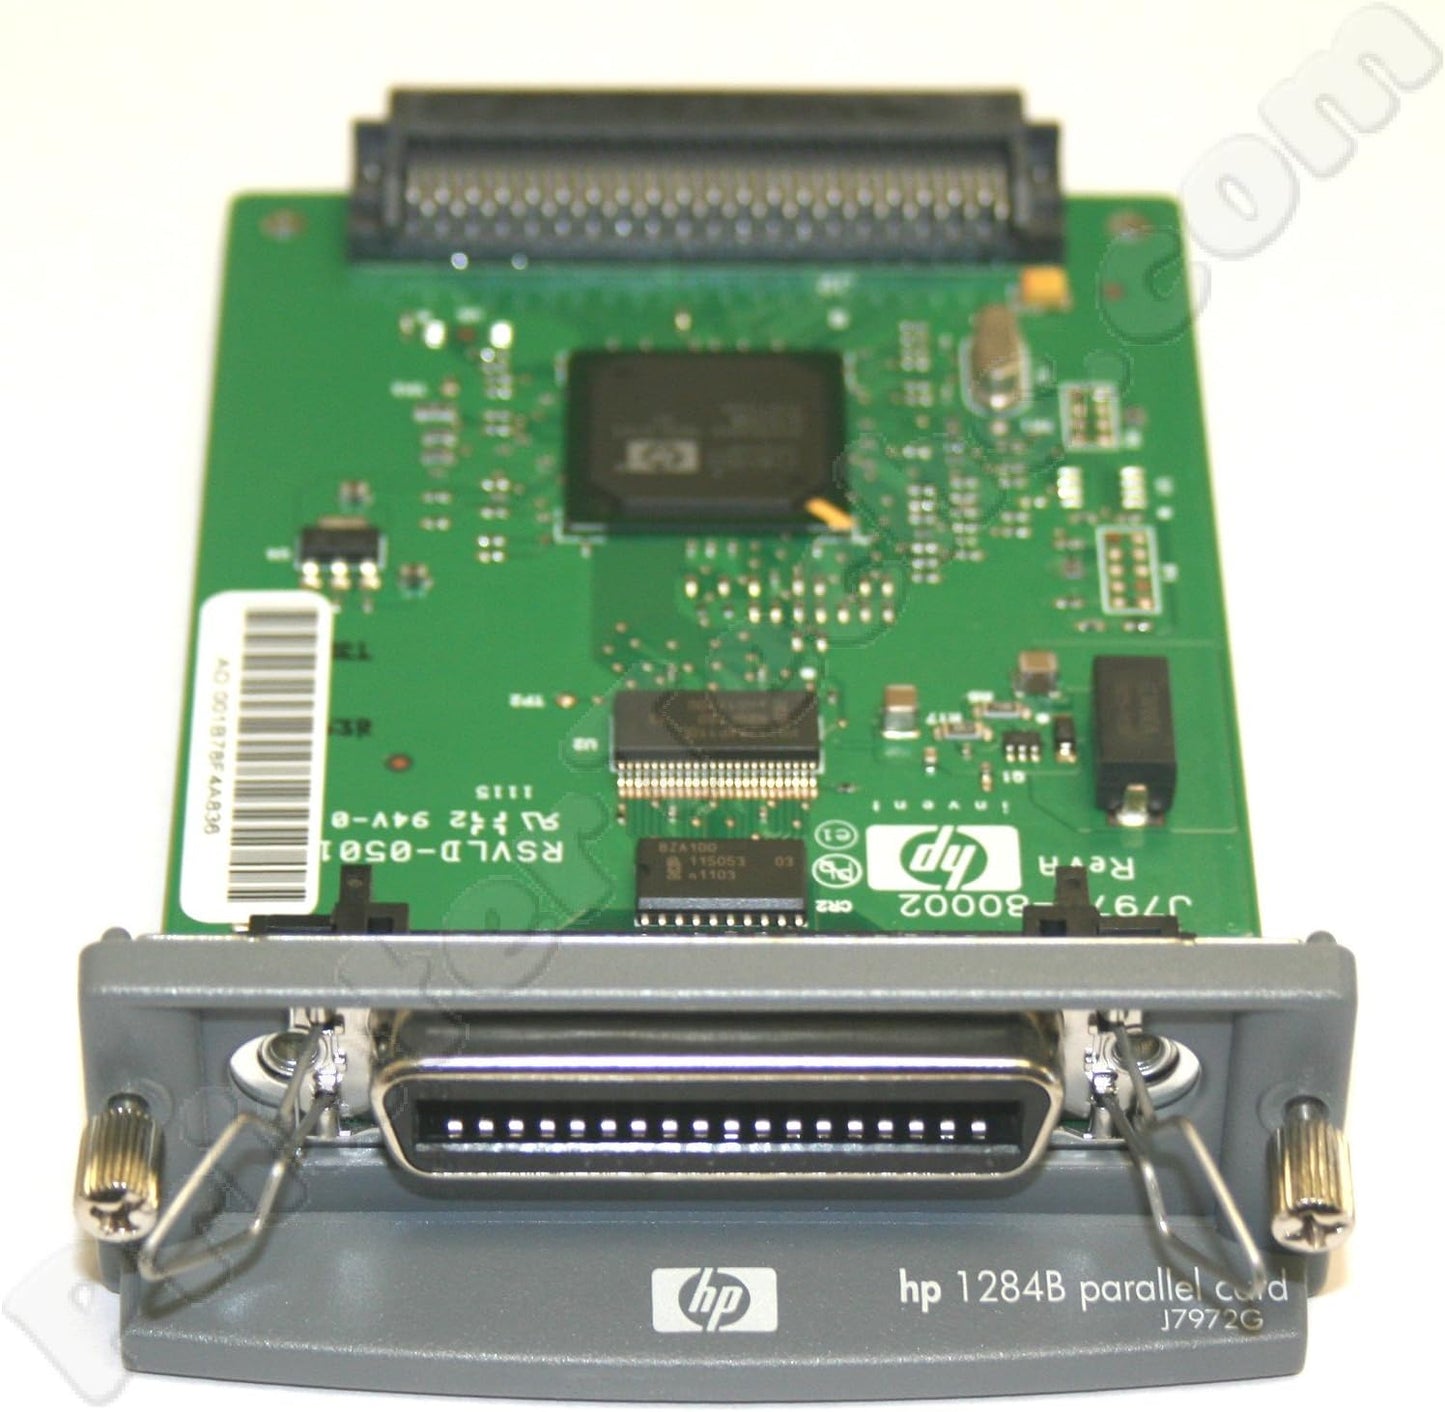 HP 1284B Parallel EIO Card - J7972G